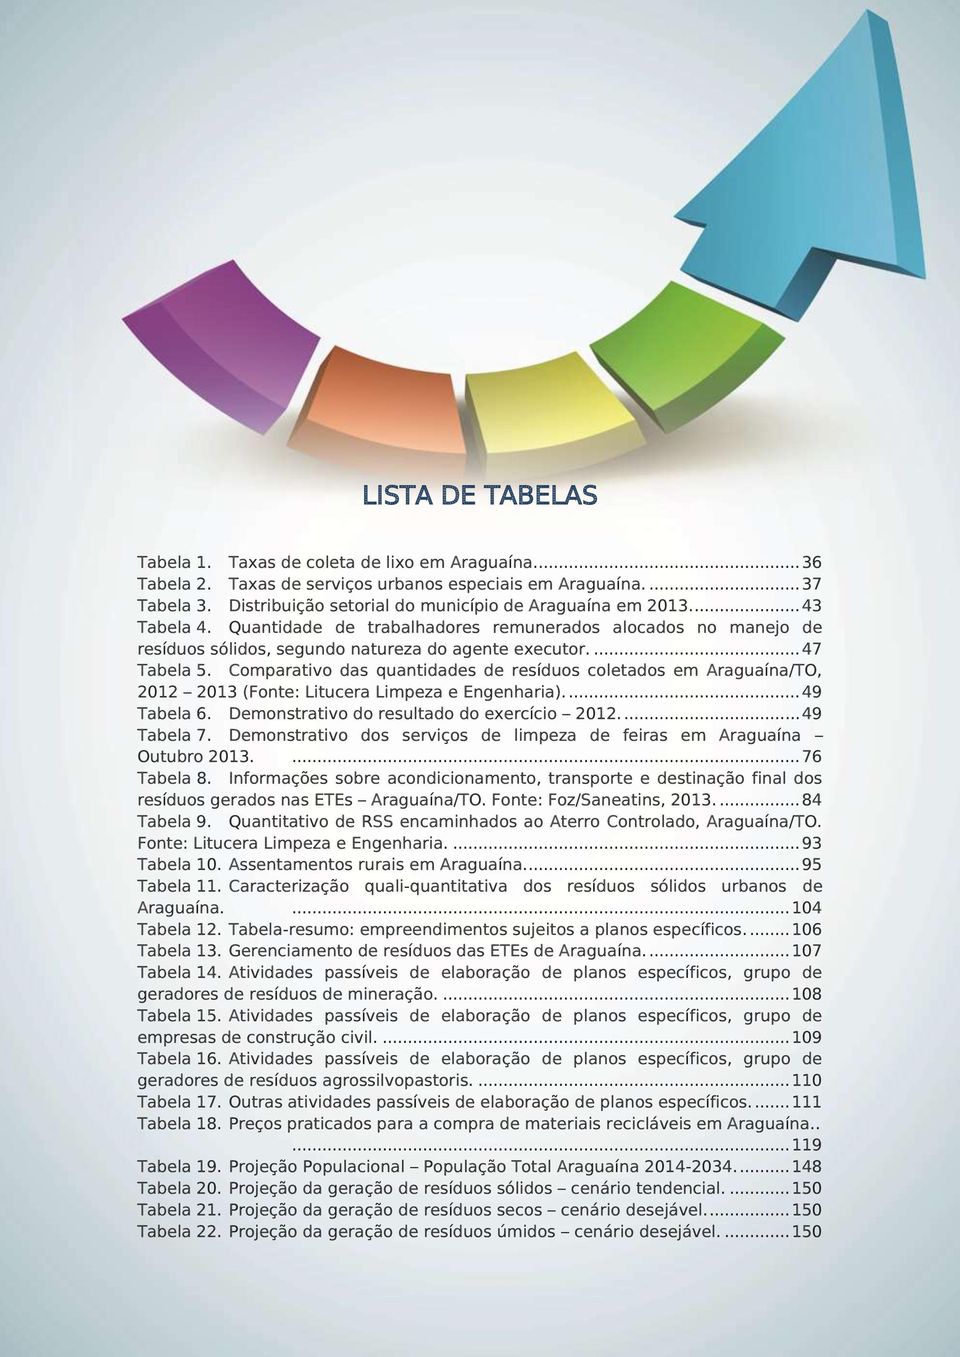 ... 47 Tabela 5. Comparativo das quantidades de resíduos coletados em Araguaína/TO, 2012 2013 (Fonte: Litucera Limpeza e Engenharia).... 49 Tabela 6. Demonstrativo do resultado do exercício 2012.